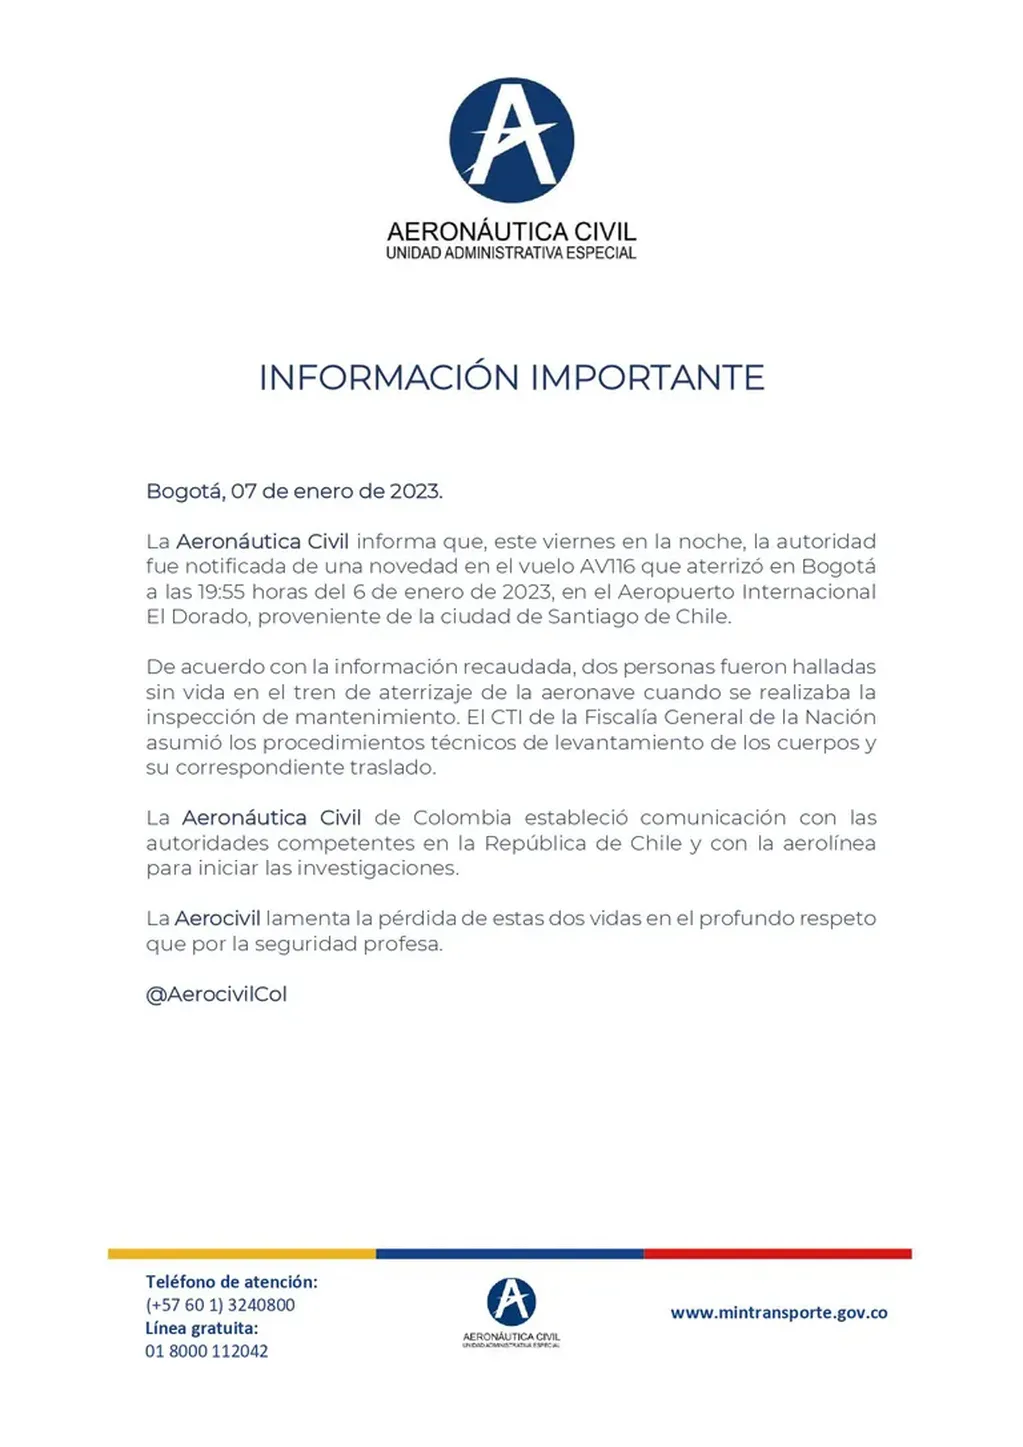 Mensaje oficial de Aeronáutica Civil de Colombia compartido en su cuenta de Twitter (@AerocivilCol).